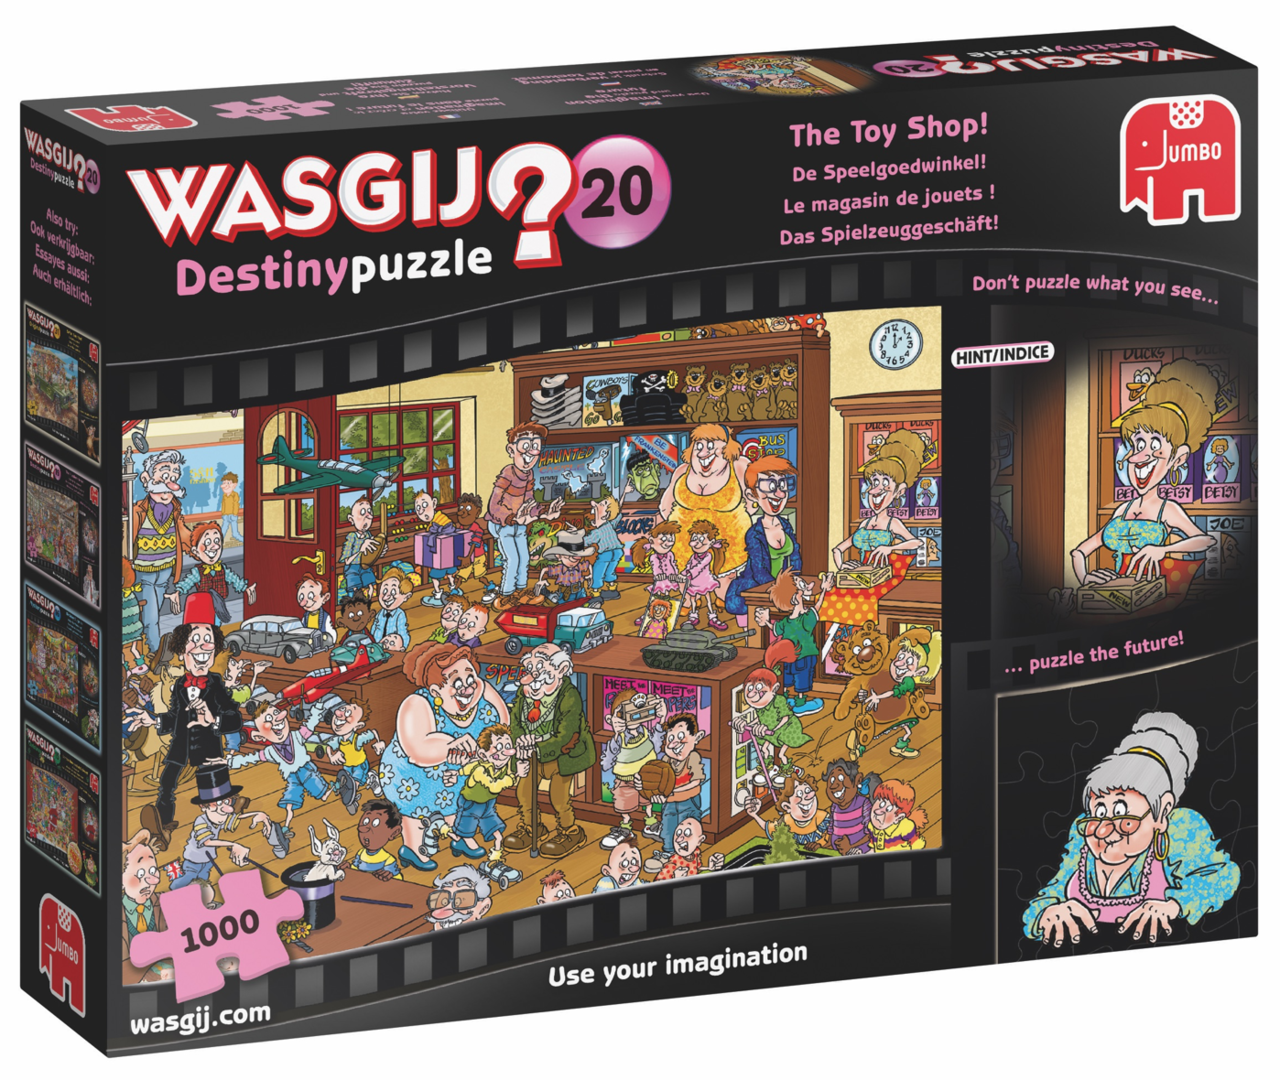 Wasgij Destiny Puzzel (#20): De Speelgoedwinkel! (1000) Spelhuis